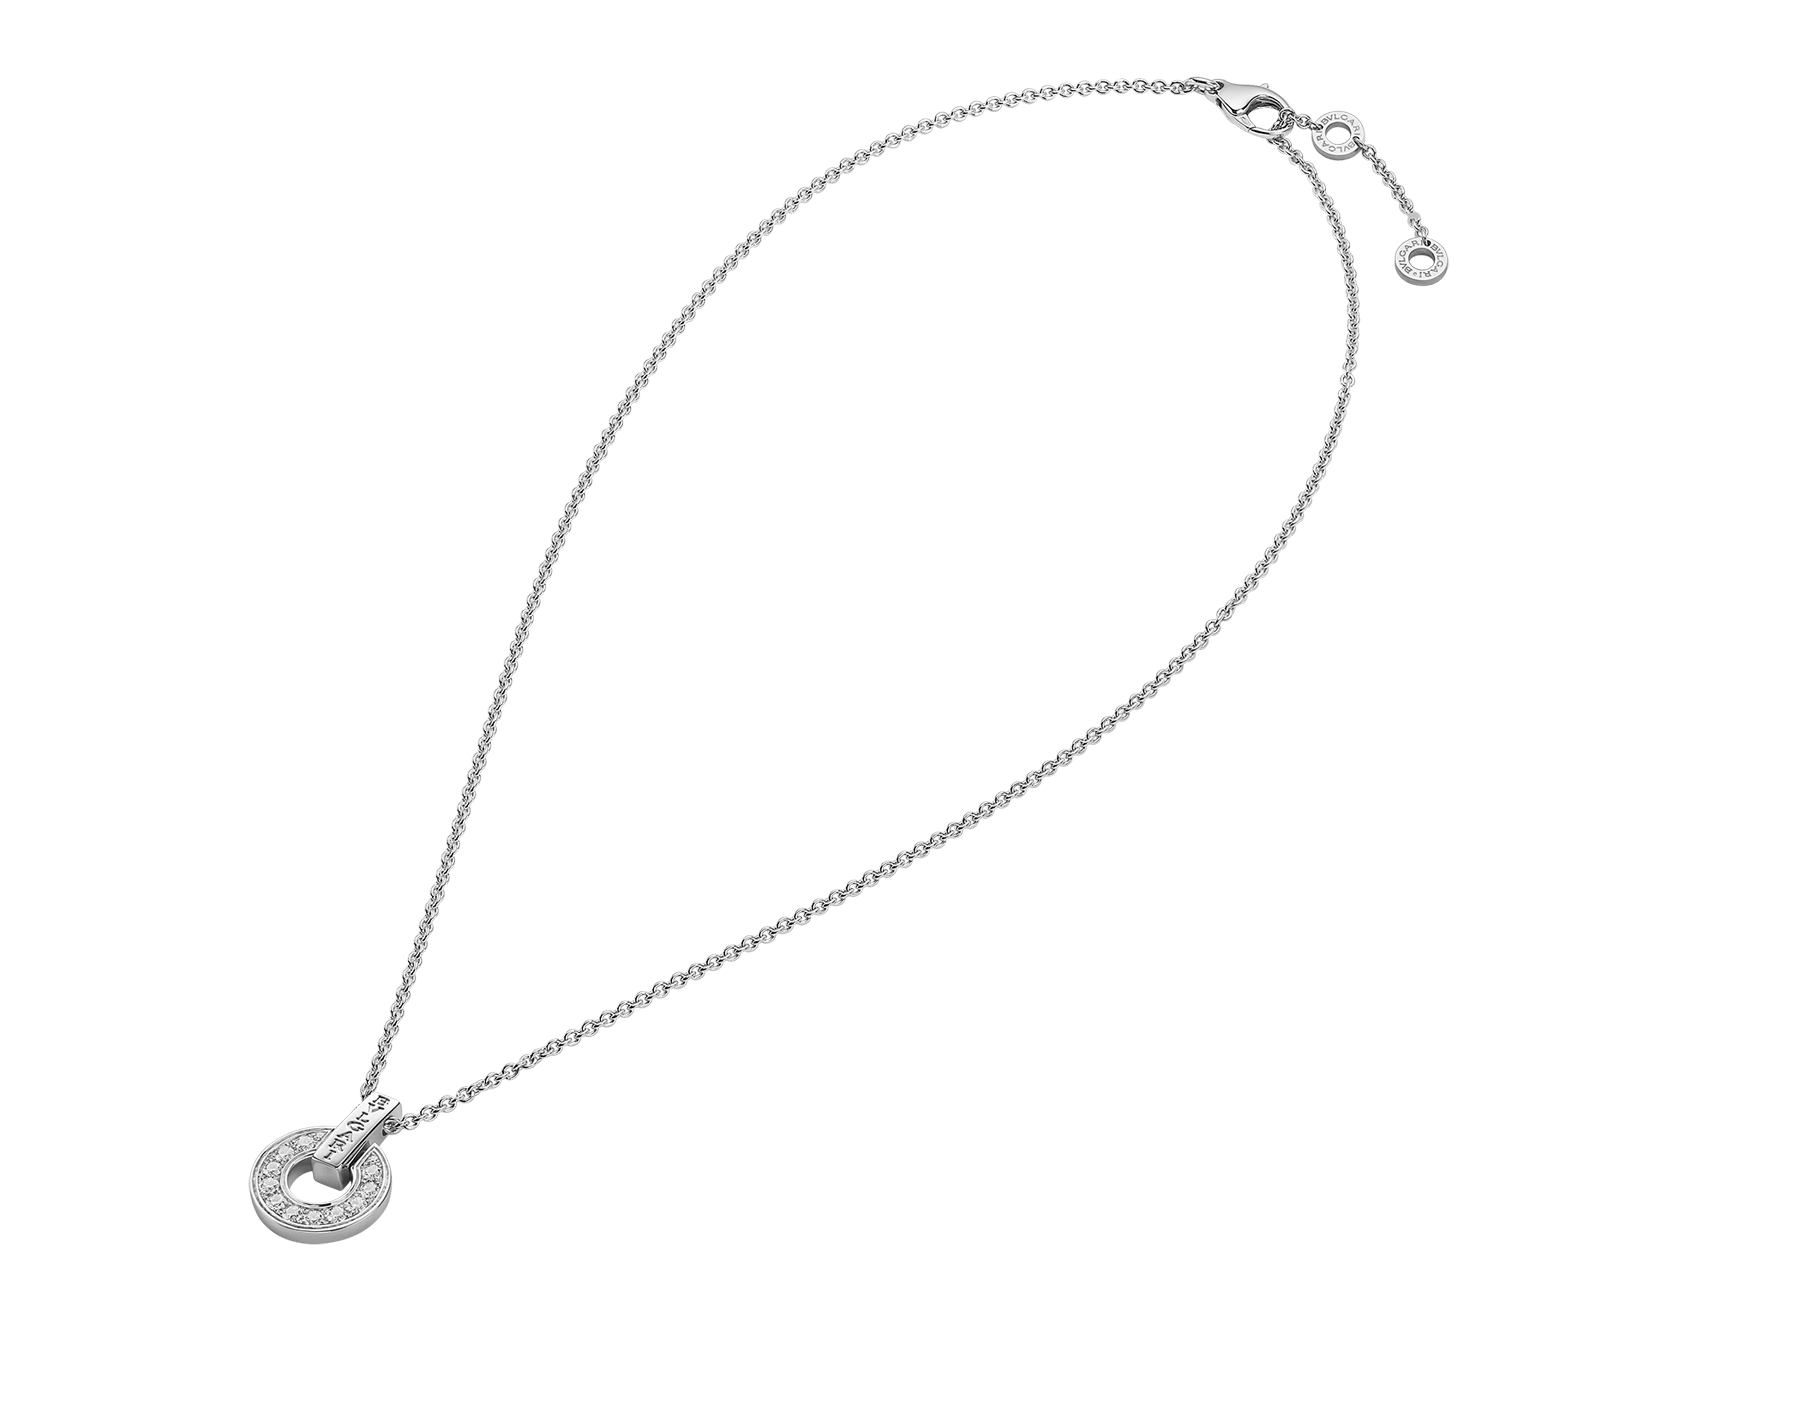 bvlgari necklace buy online